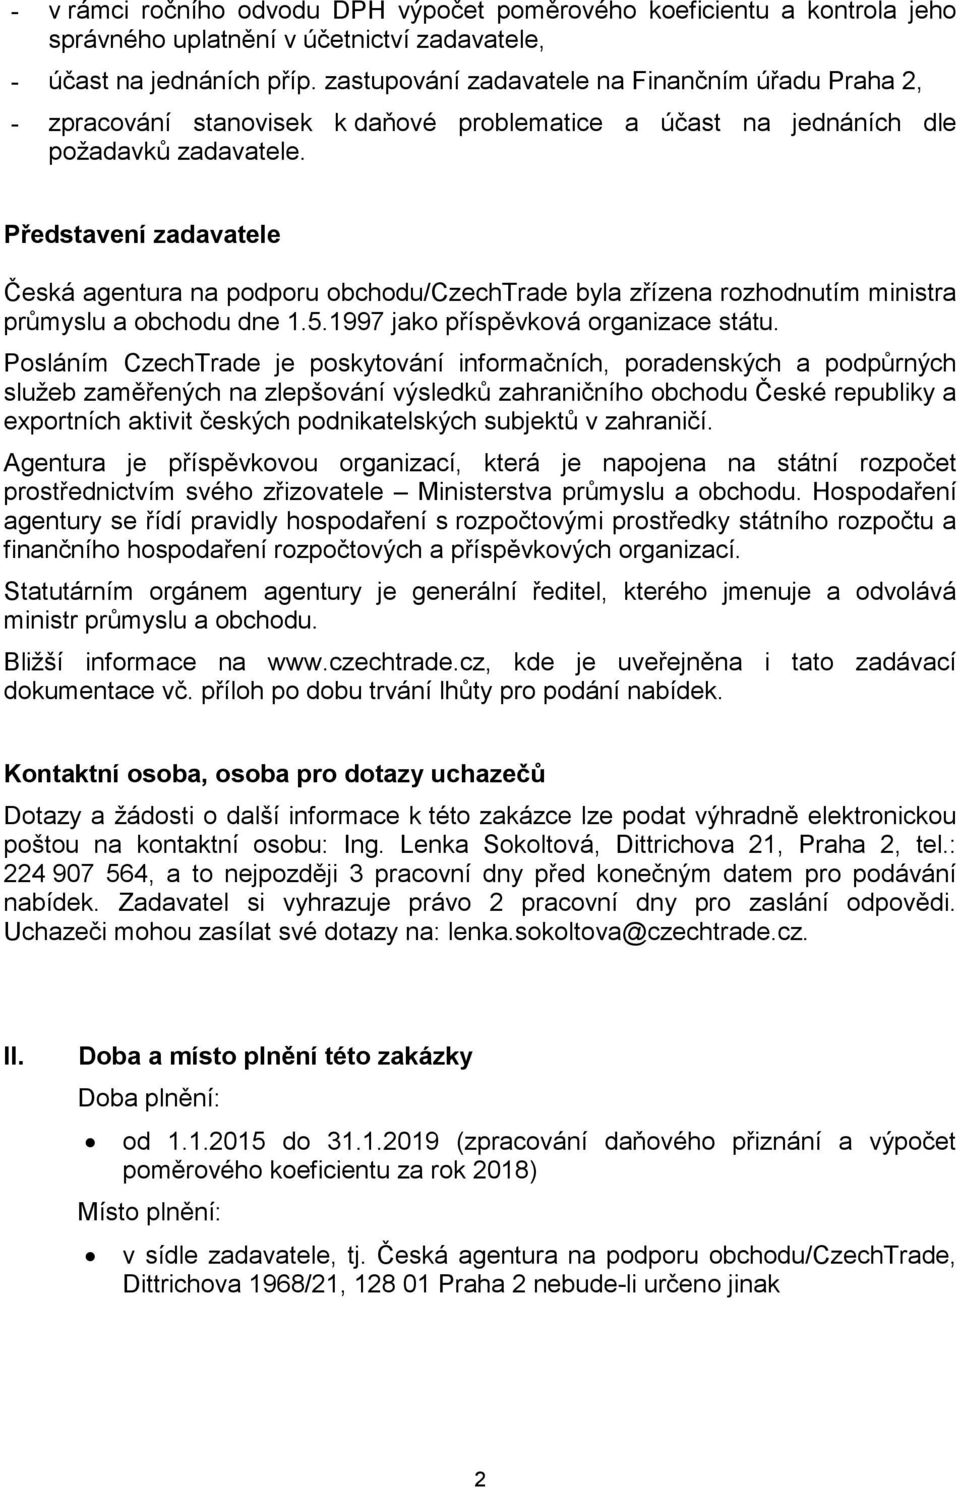 Představení zadavatele Česká agentura na podporu obchodu/czechtrade byla zřízena rozhodnutím ministra průmyslu a obchodu dne 1.5.1997 jako příspěvková organizace státu.